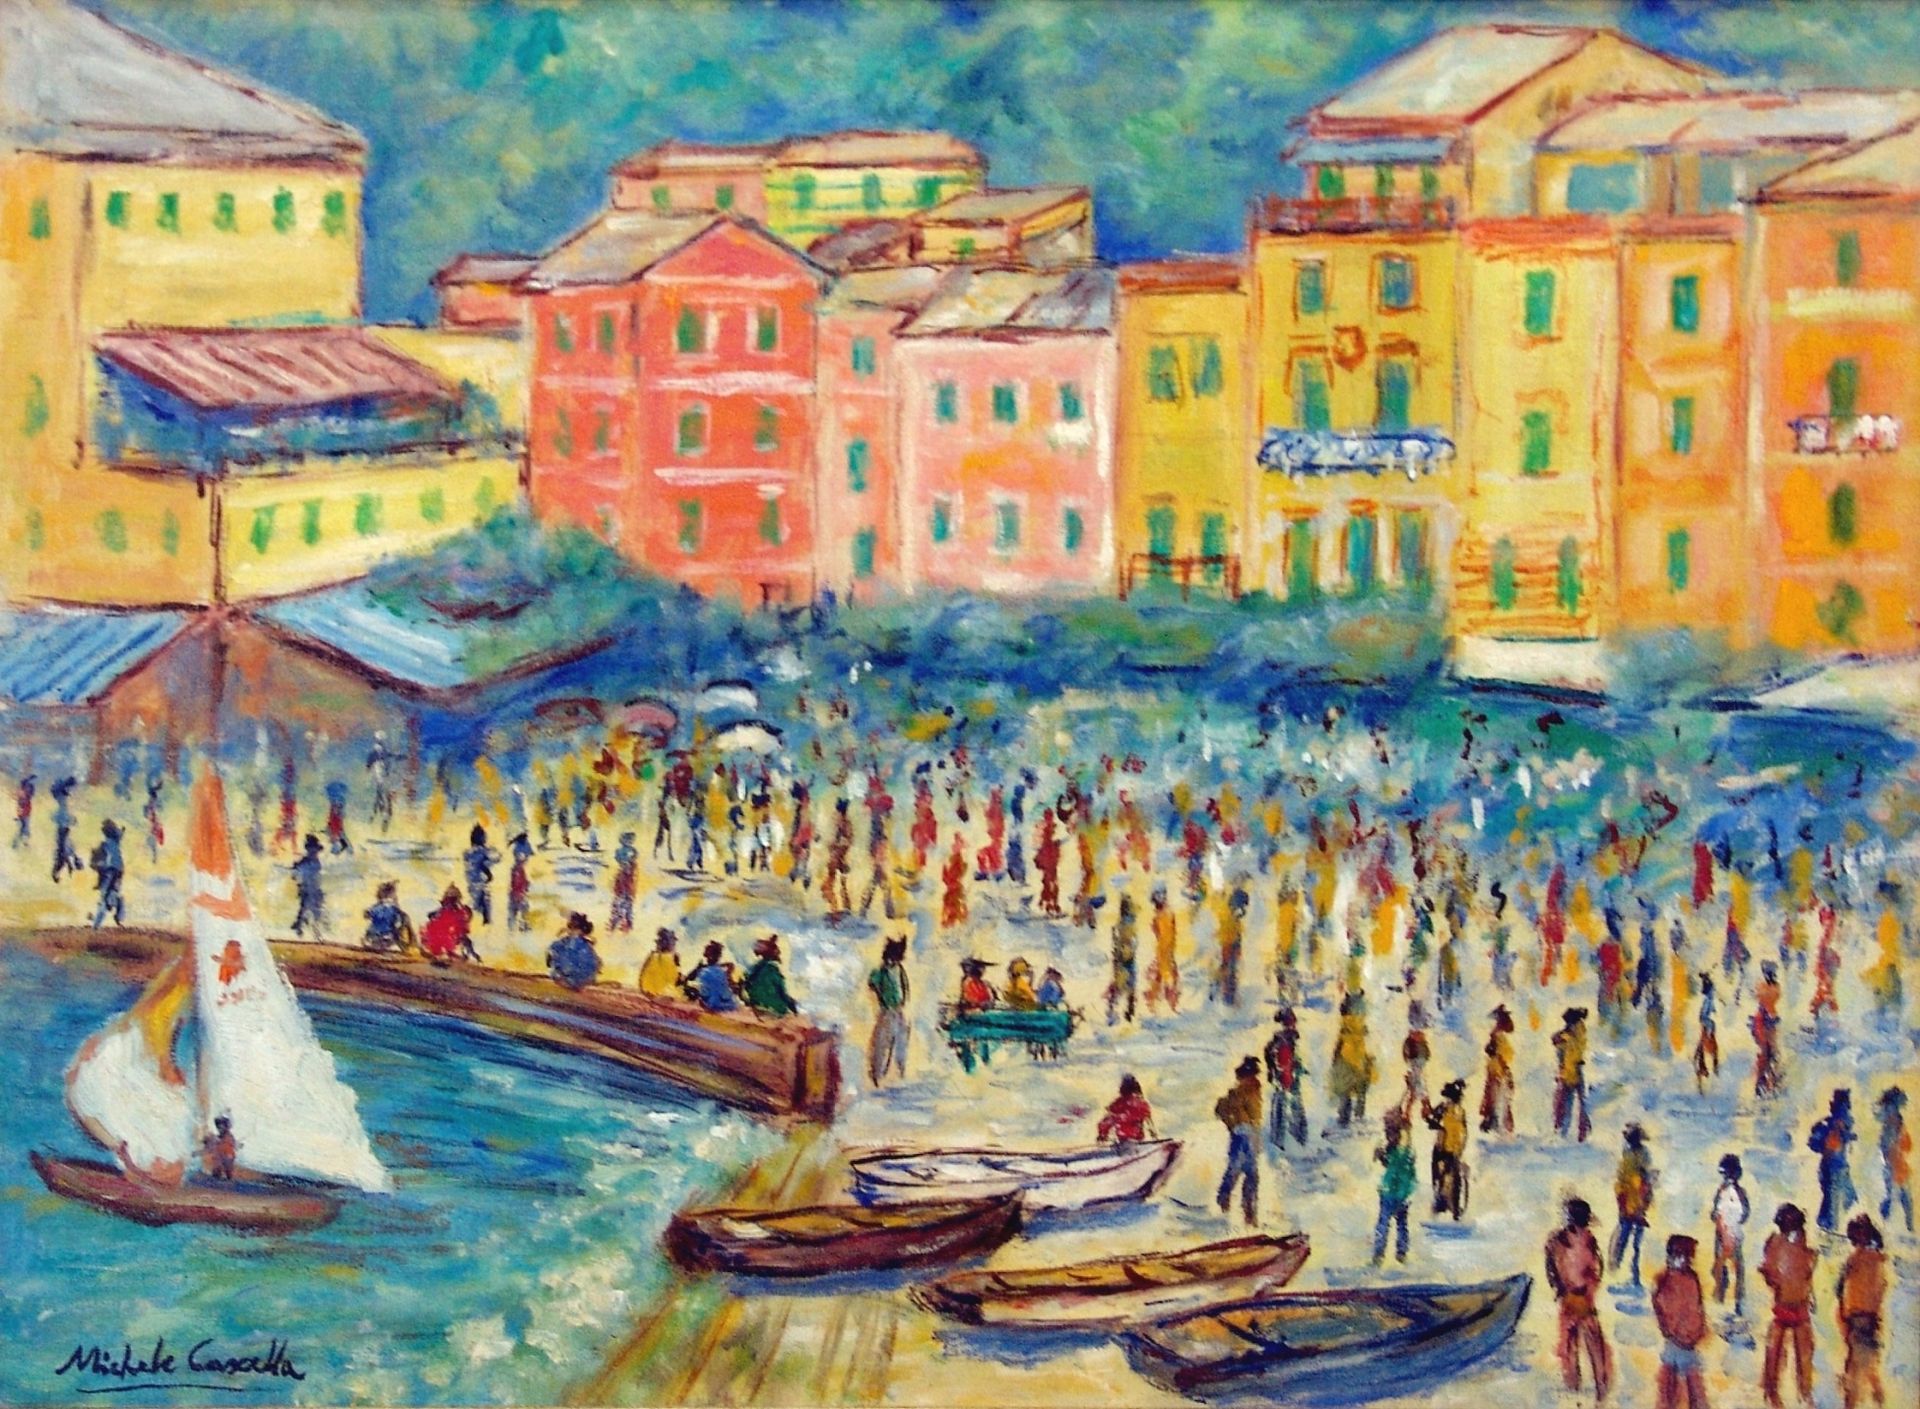 MICHELE CASCELLA Domenica a Portofino, c. 1975, olio su tela, 50x70 cm

firma de&hellip;